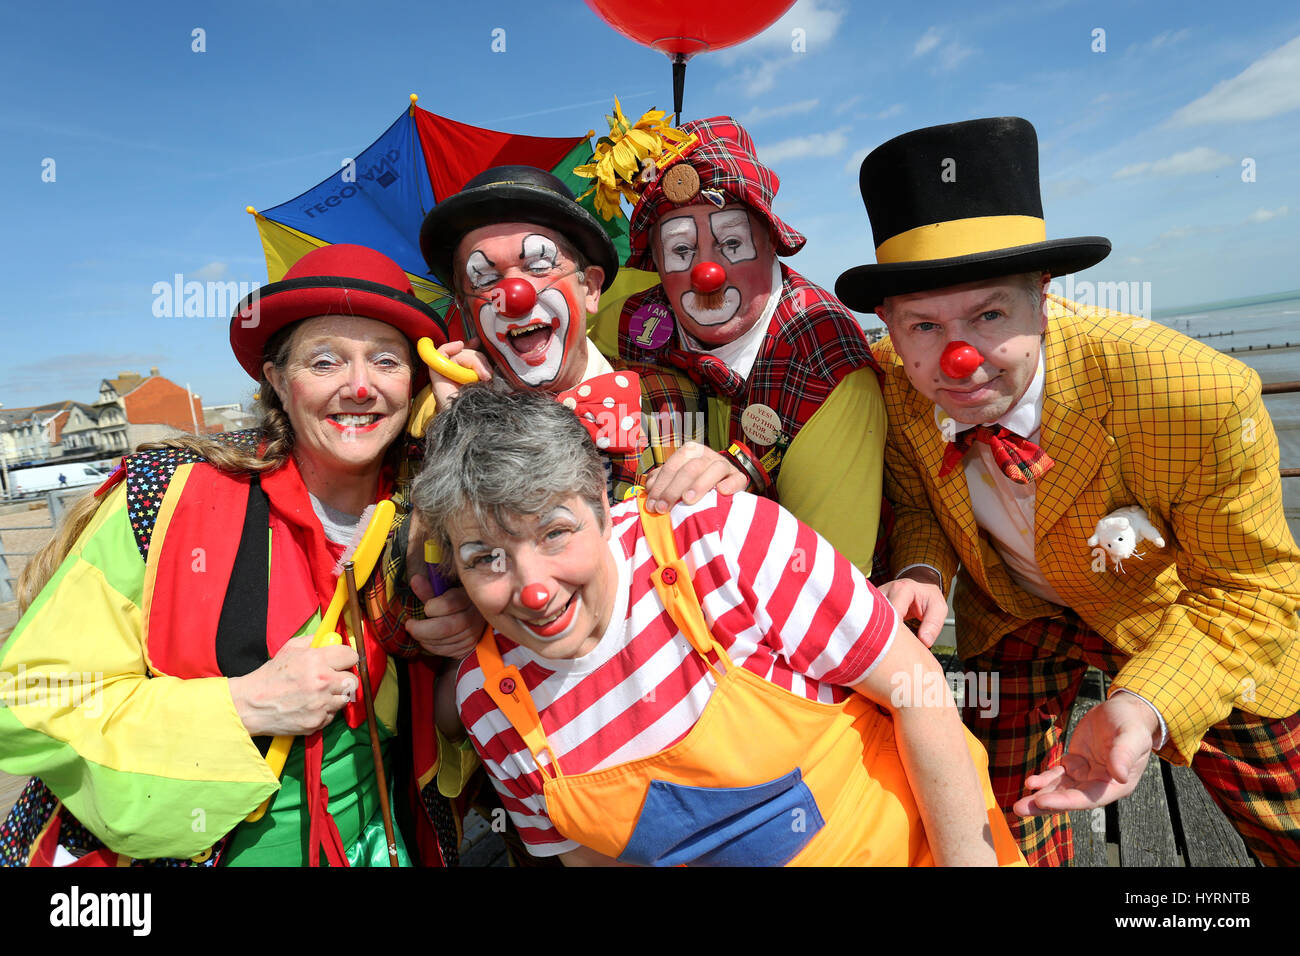 Pagliacci nell'esecuzione in Bognor Regis Clown Festival 2017 raffigurata a Bognor Regis Pier nel sole per promuovere l'evento. Bognor Regis, Sussex, Regno Unito. Foto Stock